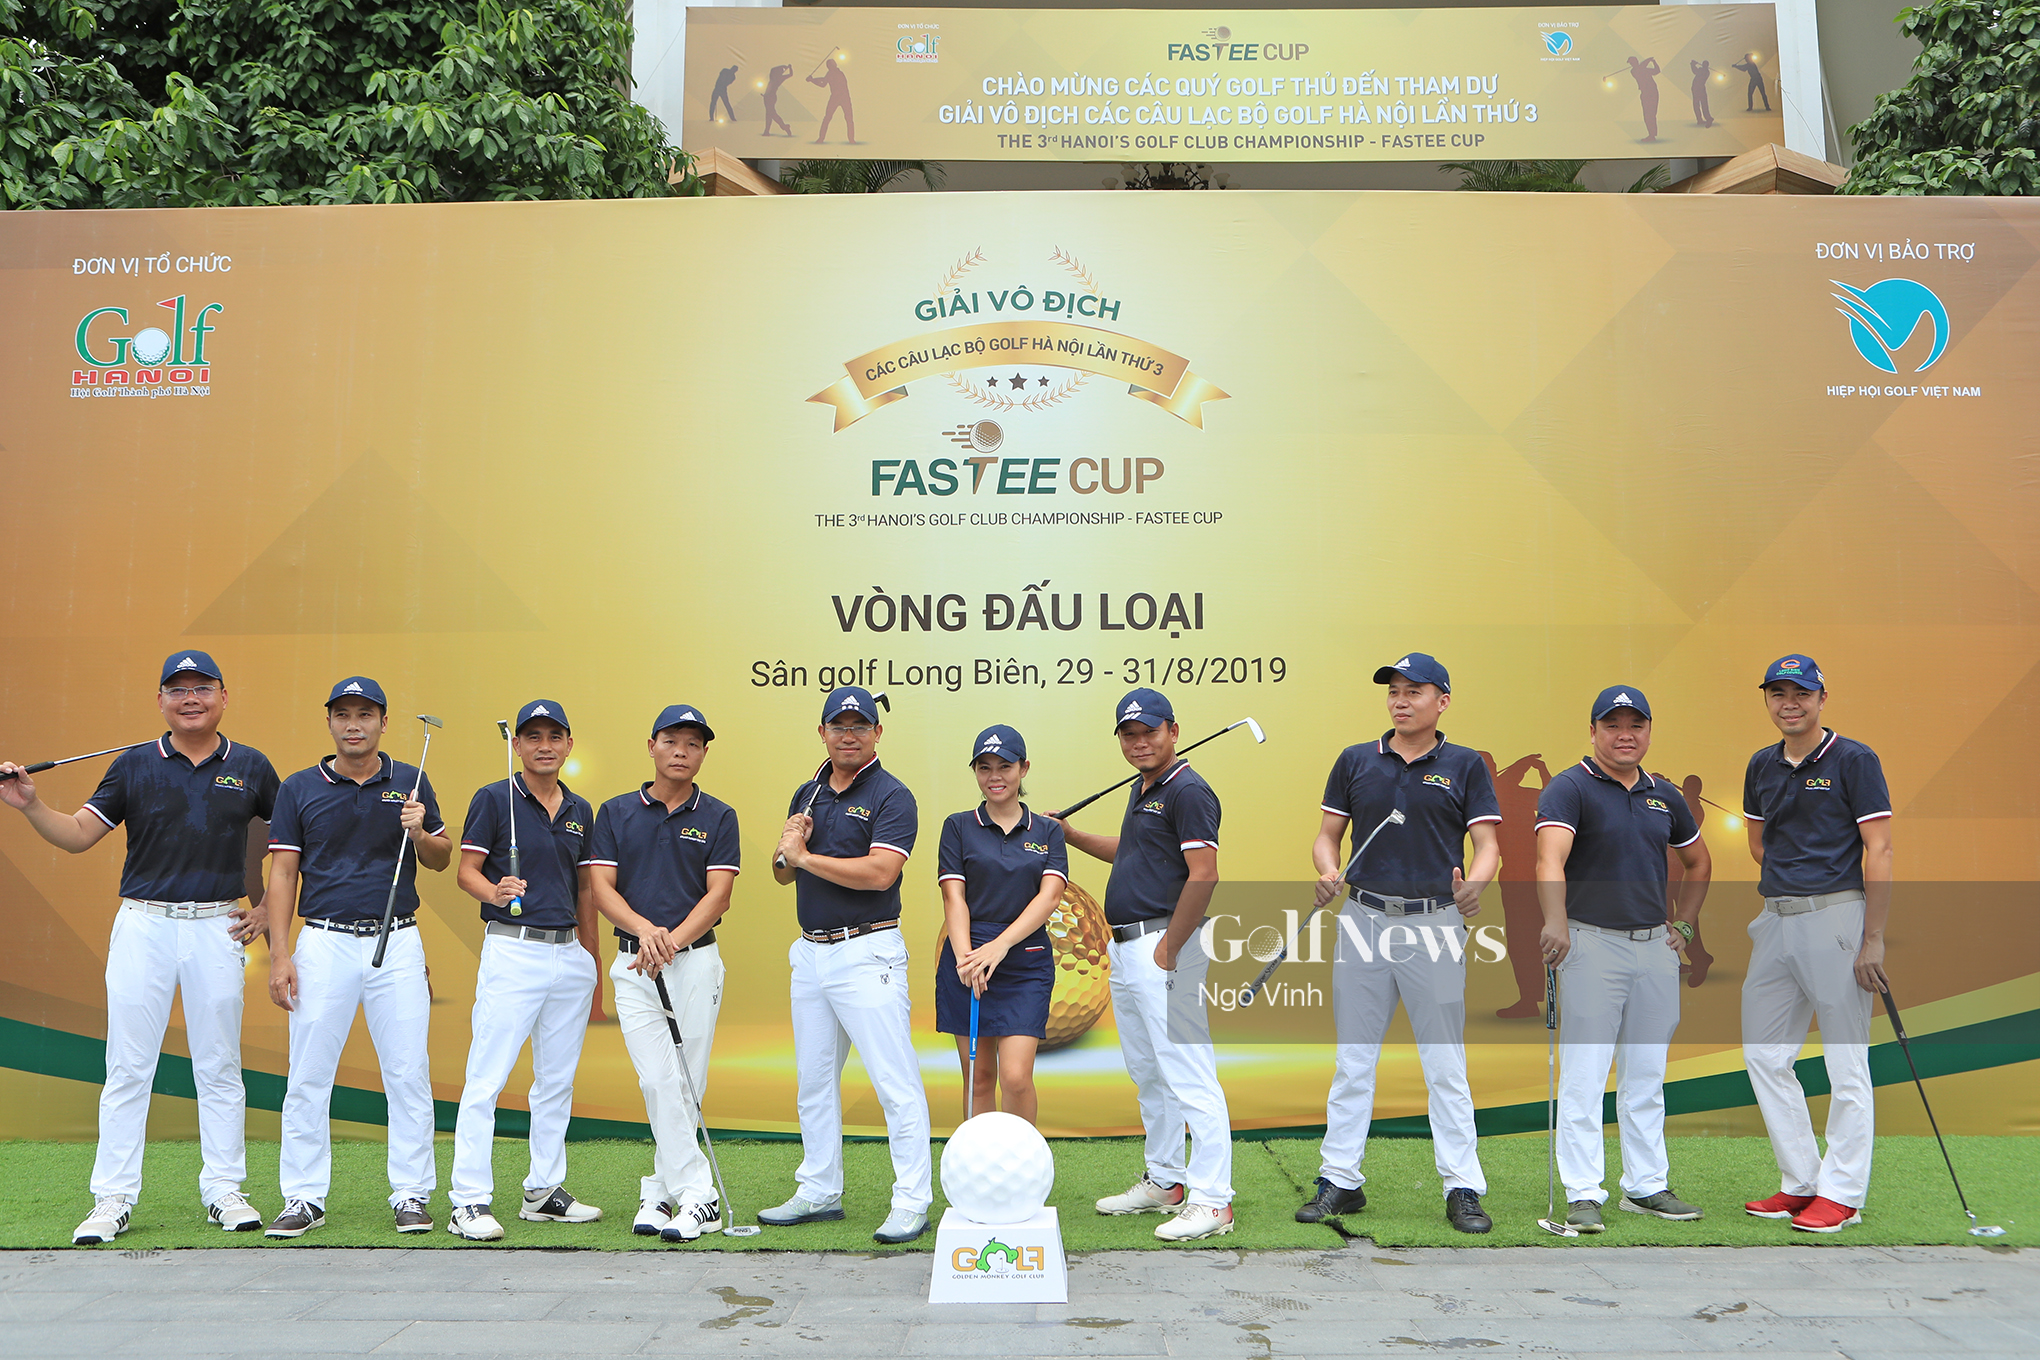 Vòng loại giải Vô địch các CLB golf Hà Nội lần thứ 3 – Fastee Cup: Xác định 9 CLB cuối cùng vào vòng chung kết